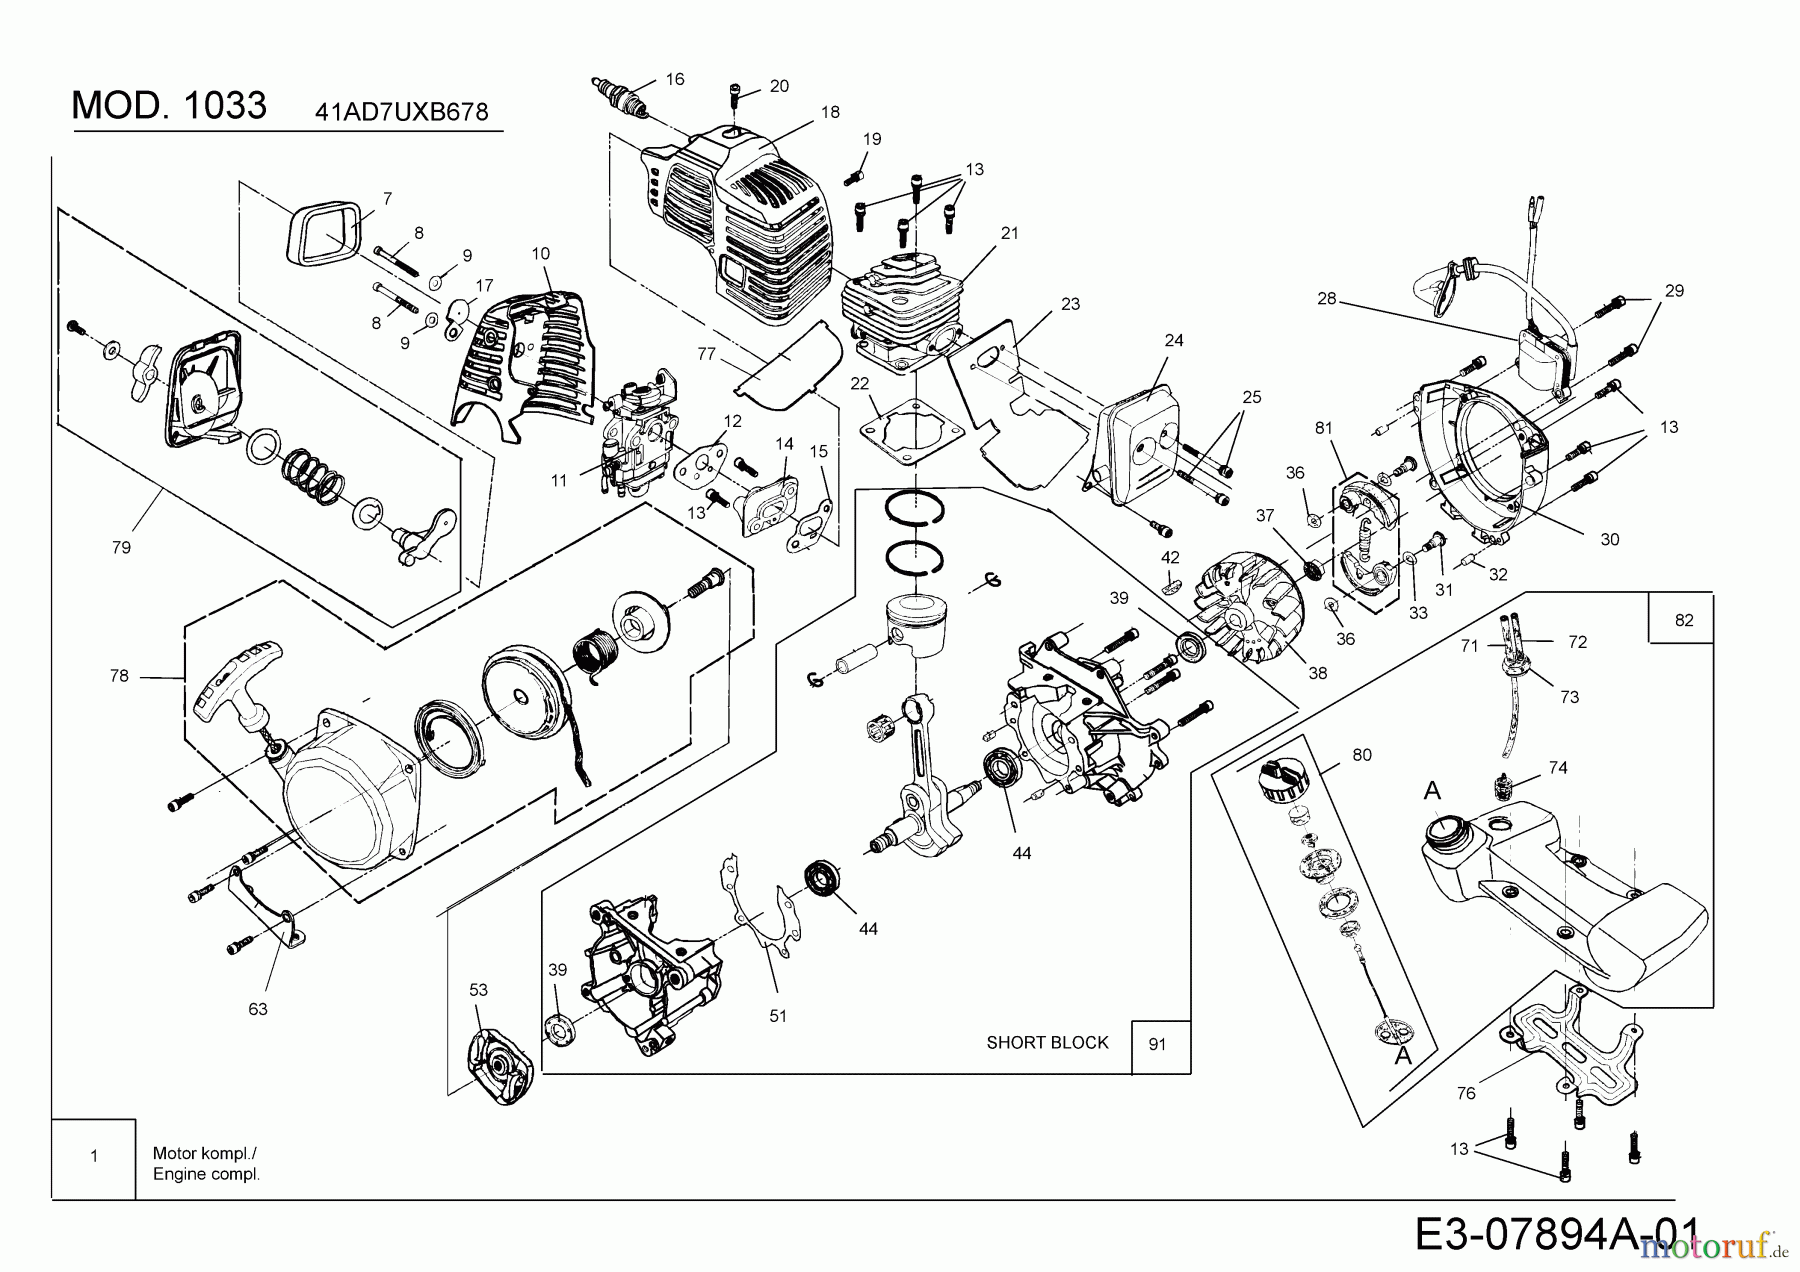  MTD Motorsensen 1033 41AD7UXB678  (2019) Motor